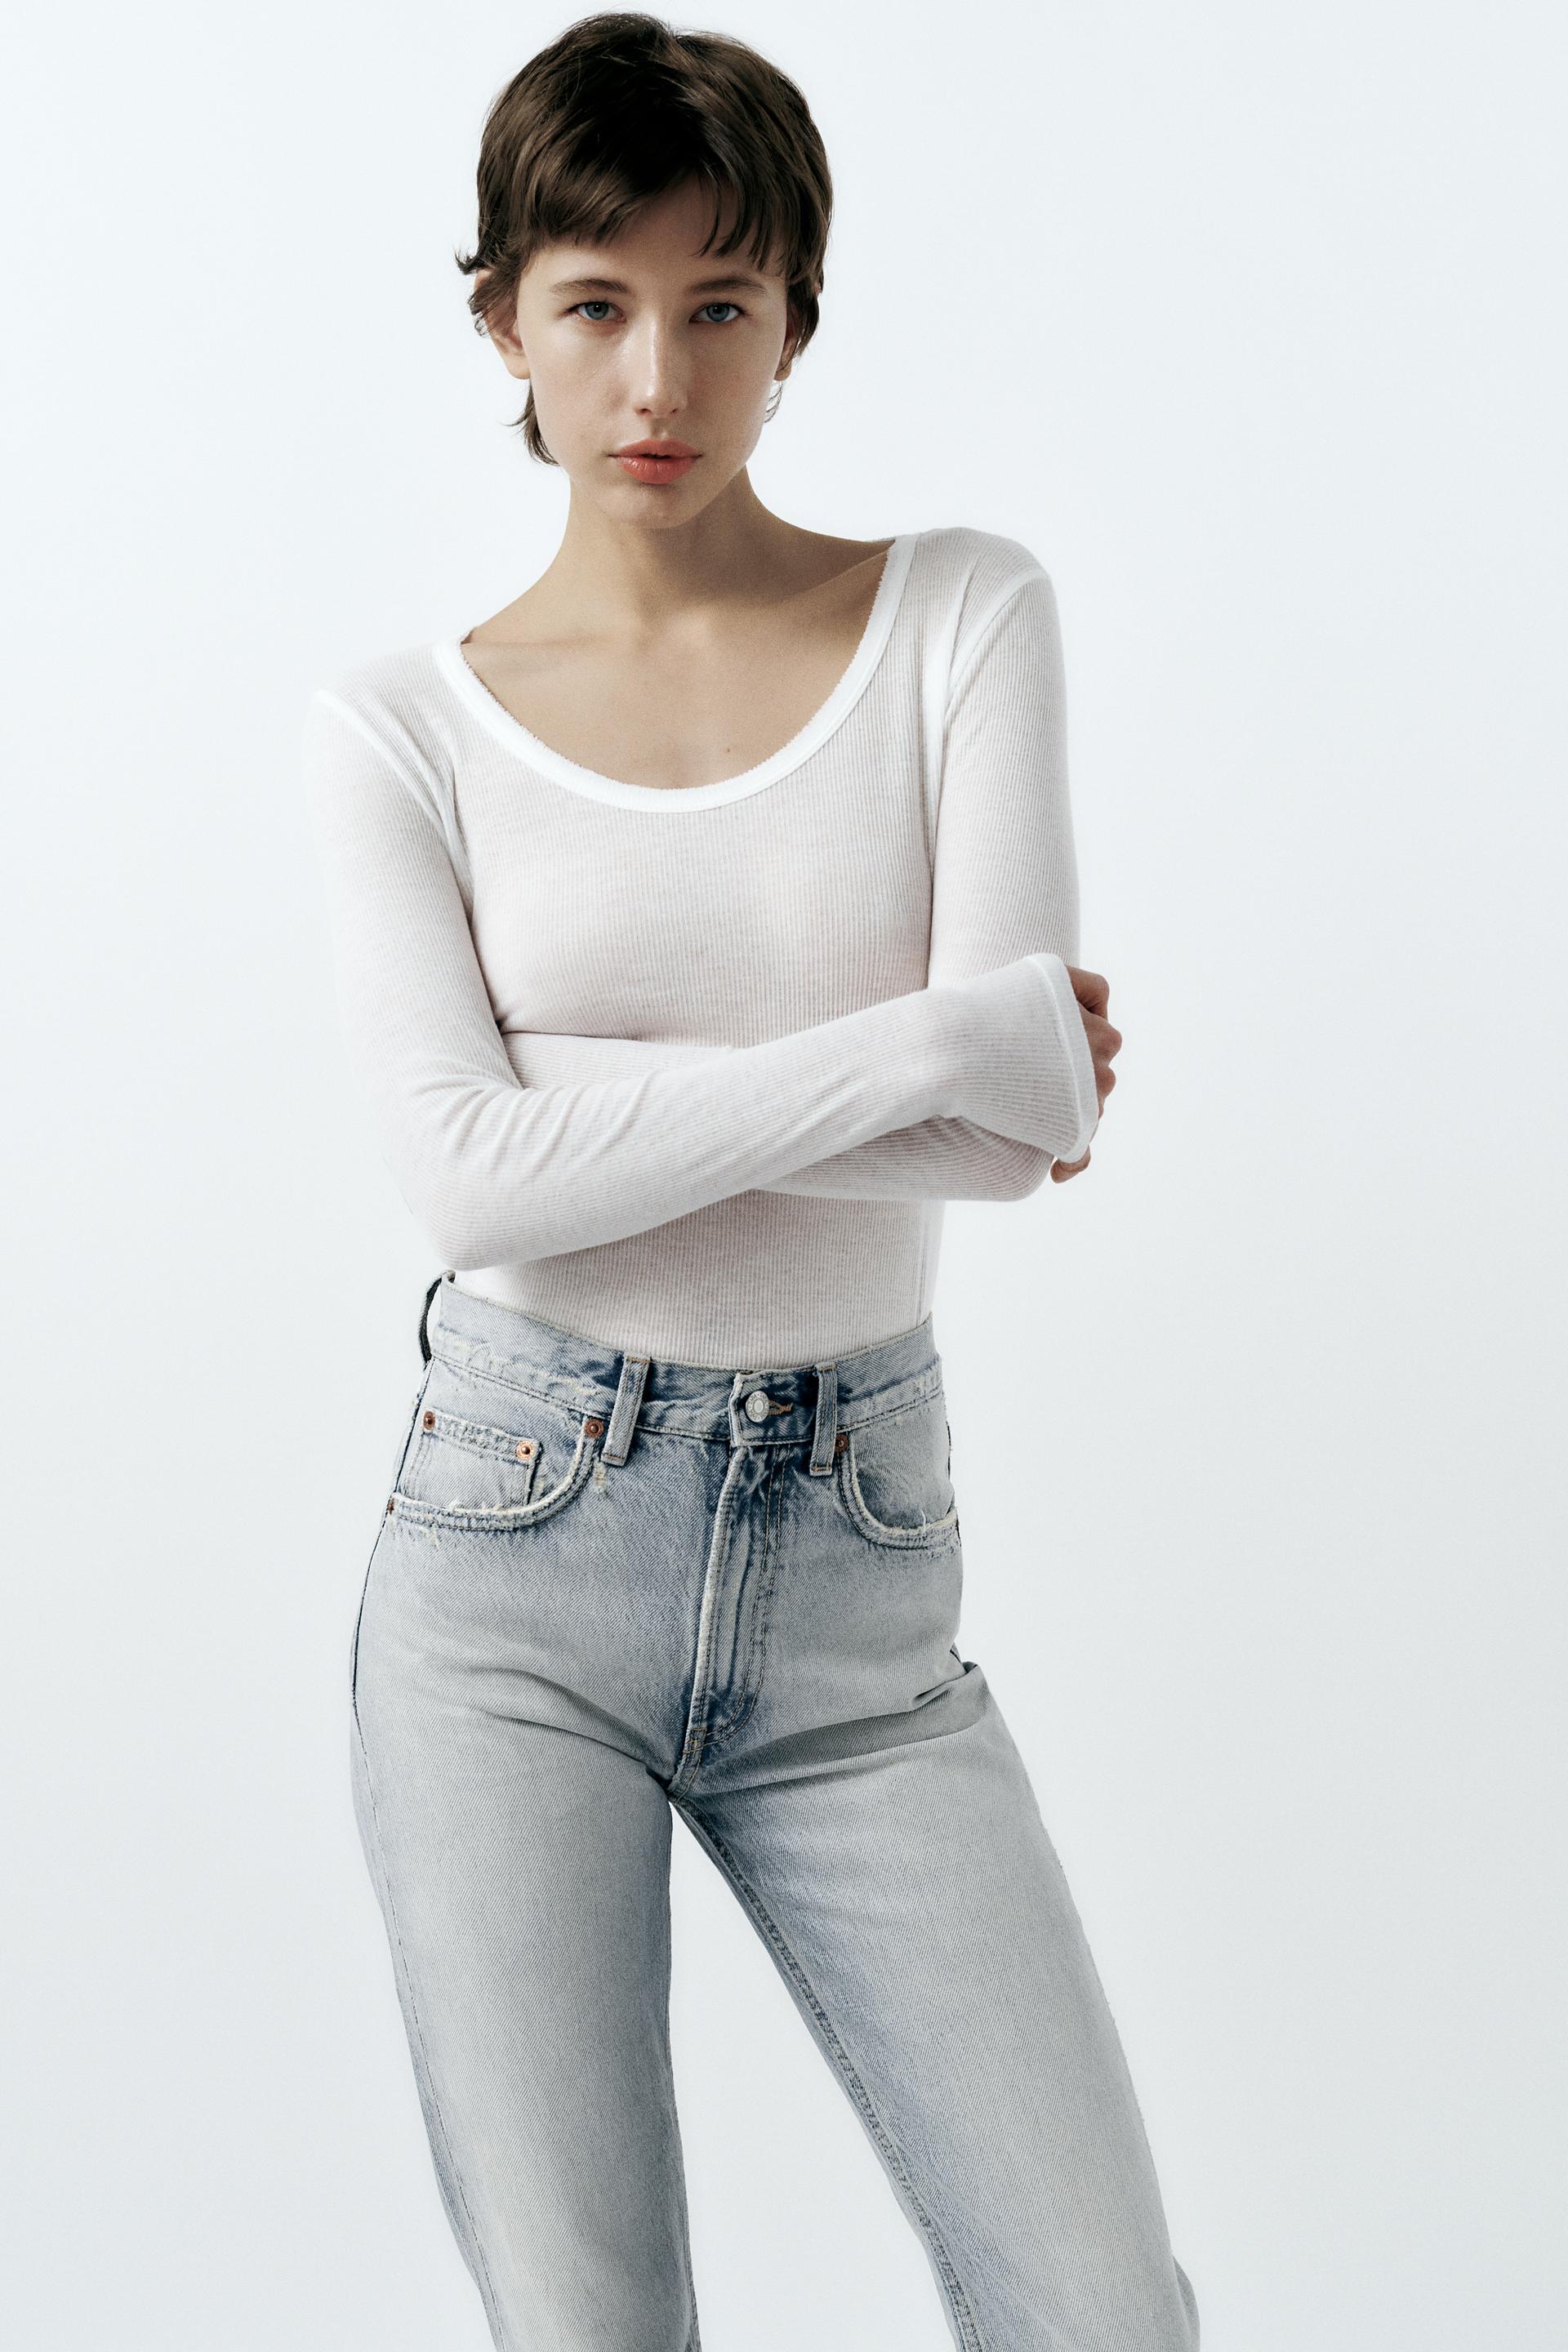 Calça Jeans Zara com Elastano Cintura Alta Tam 36, Calça Feminina Zara  Usado 84814772